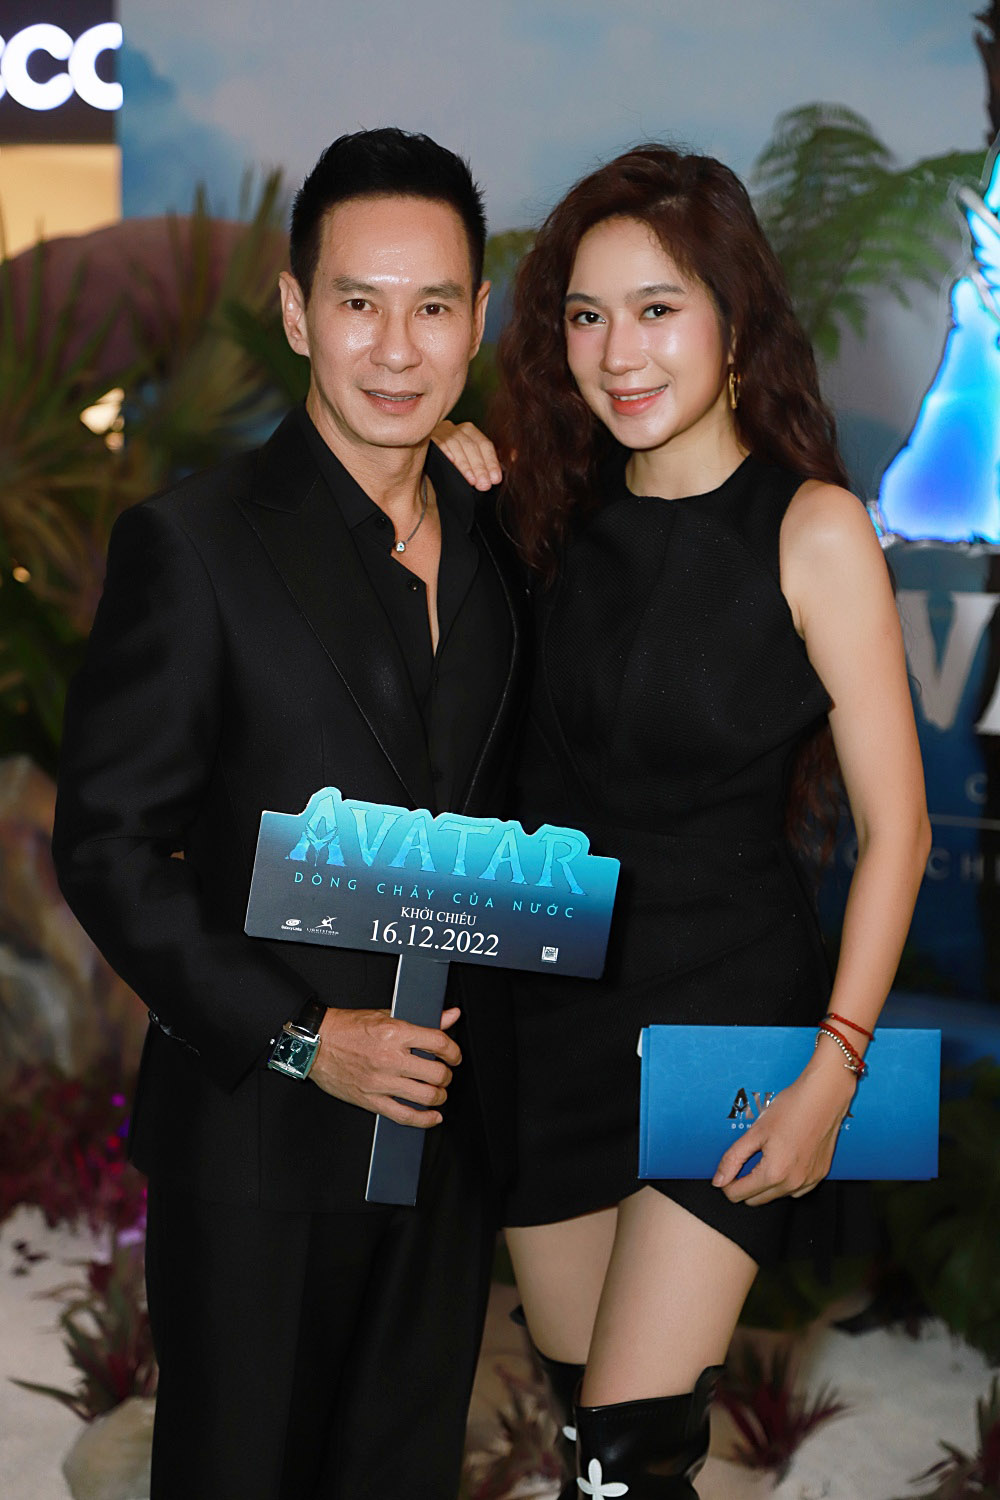 Quỳnh Anh Shyn diện váy nổi bần bật, tay trong tay tình tứ bên bạn trai - Ảnh 3.